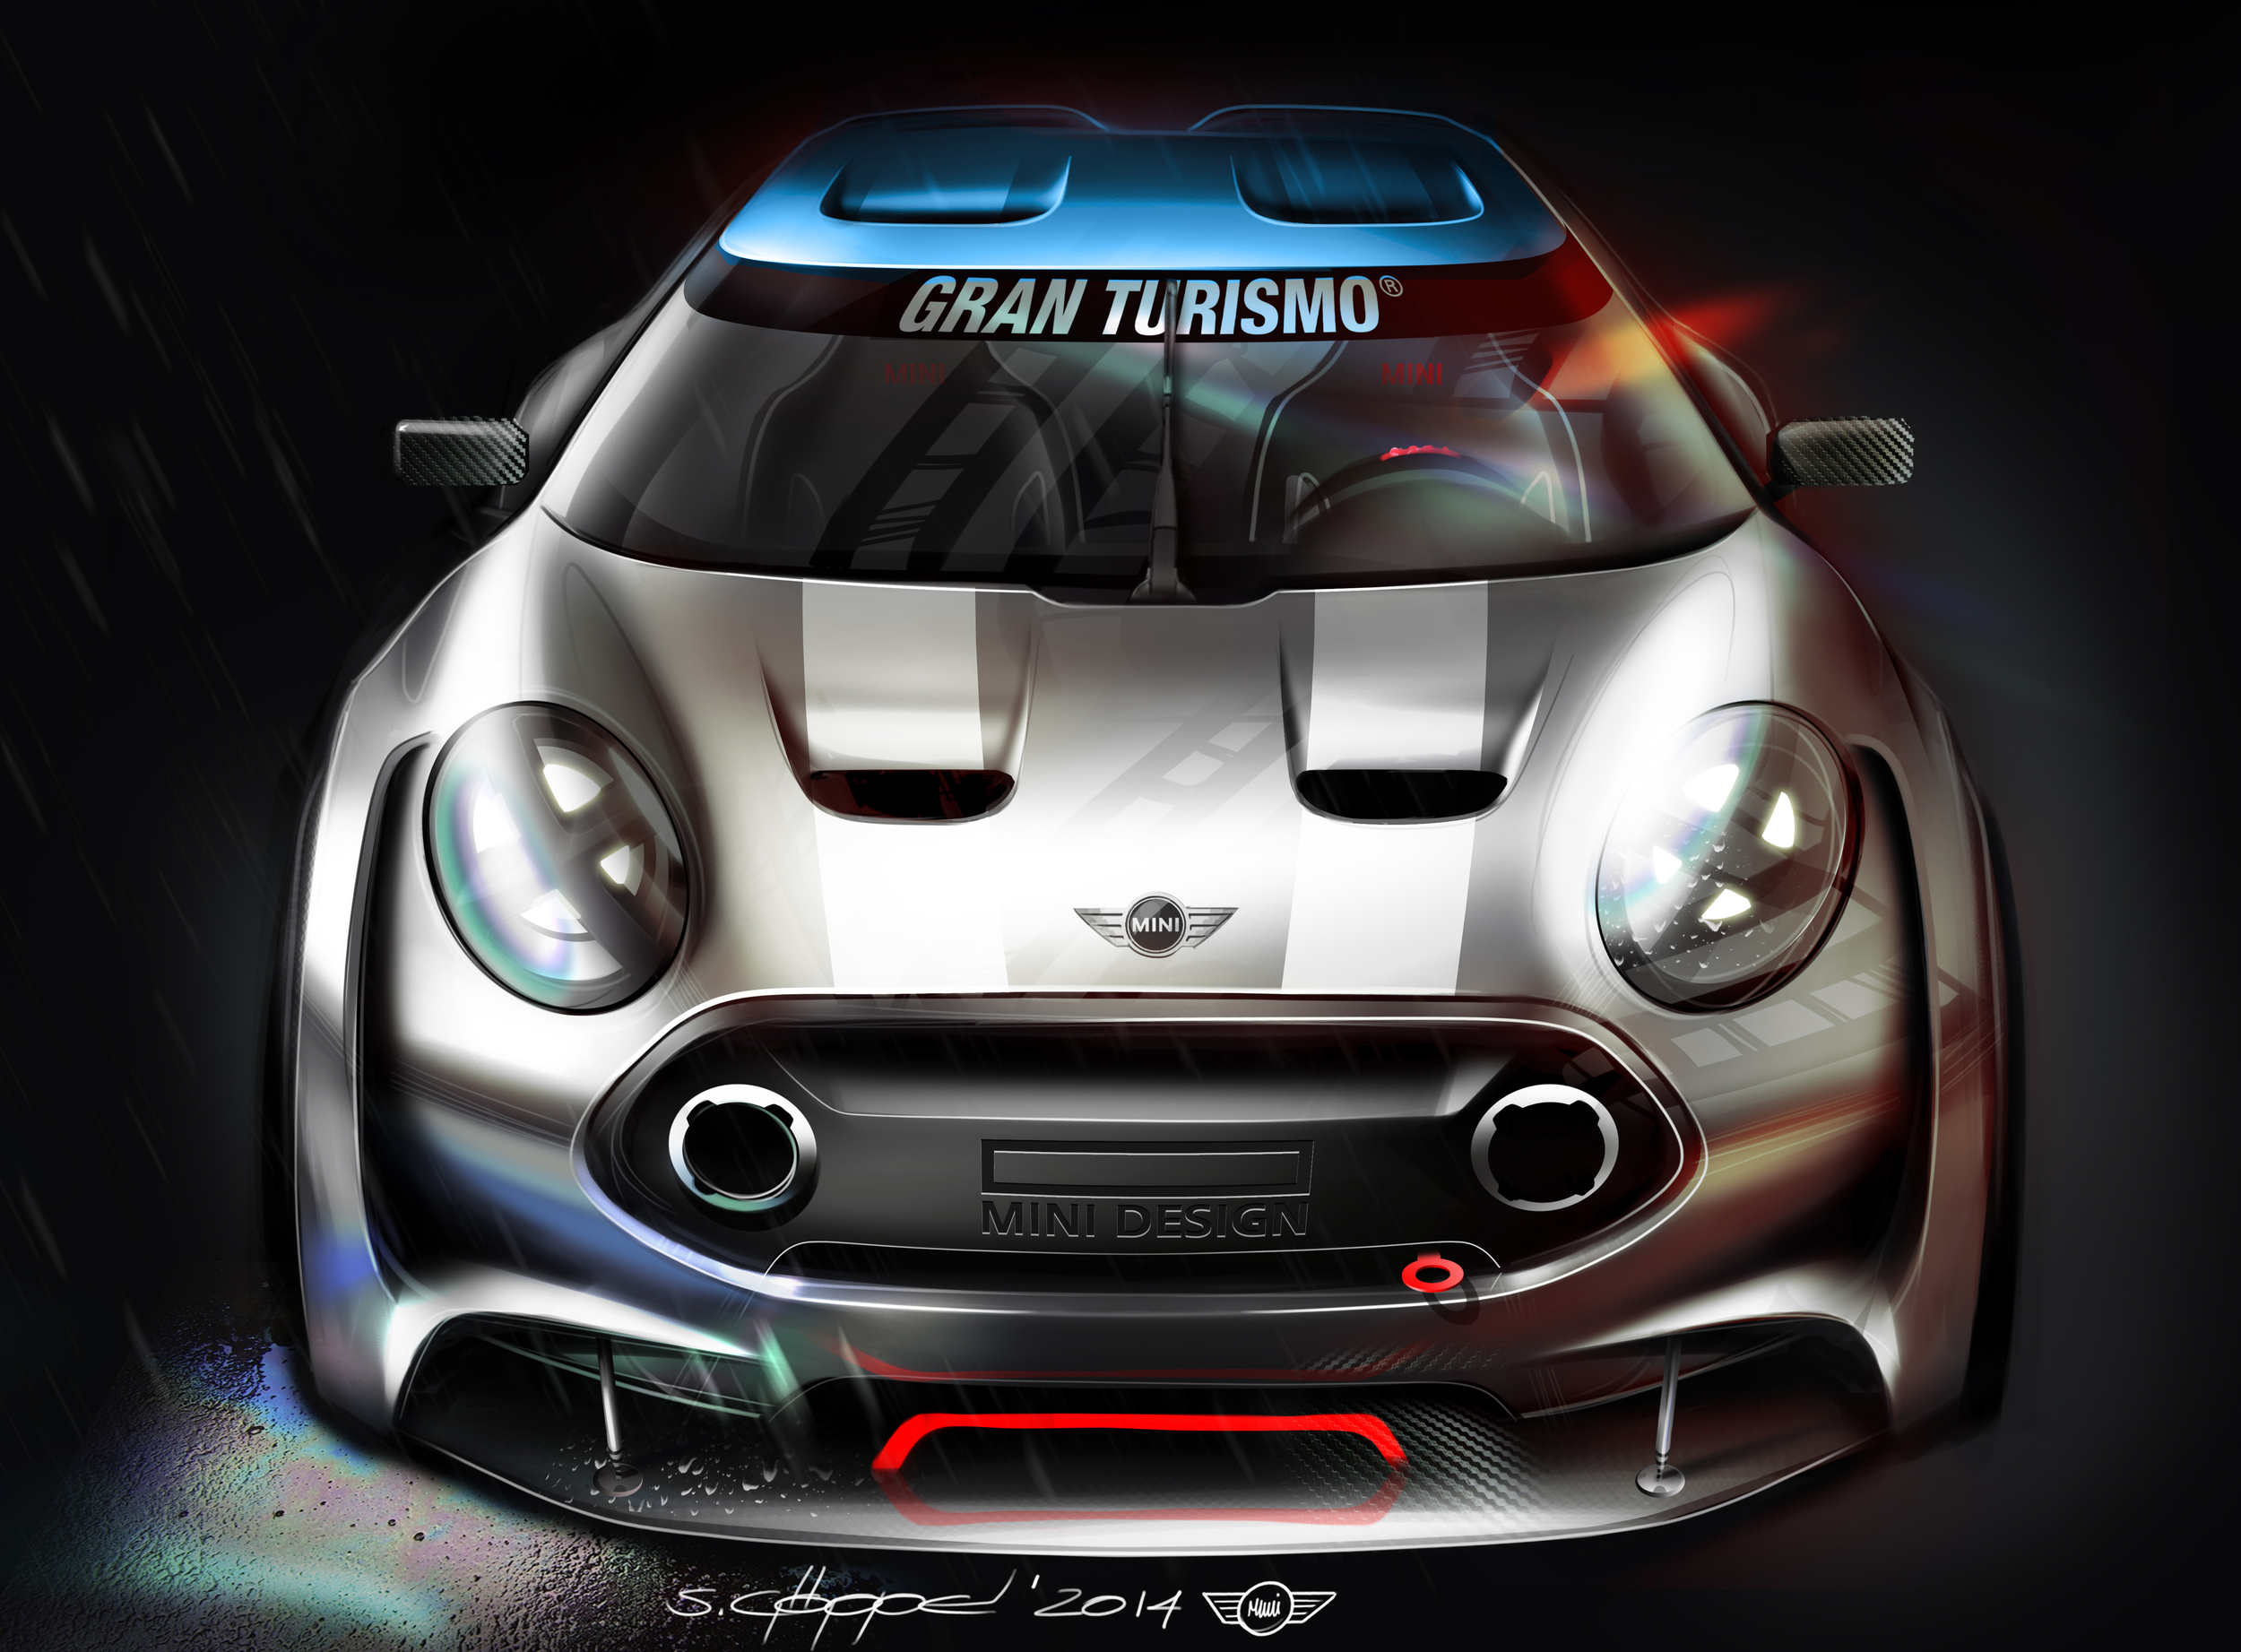 MINI Clubman Vision Gran Turismo - Design Sketch